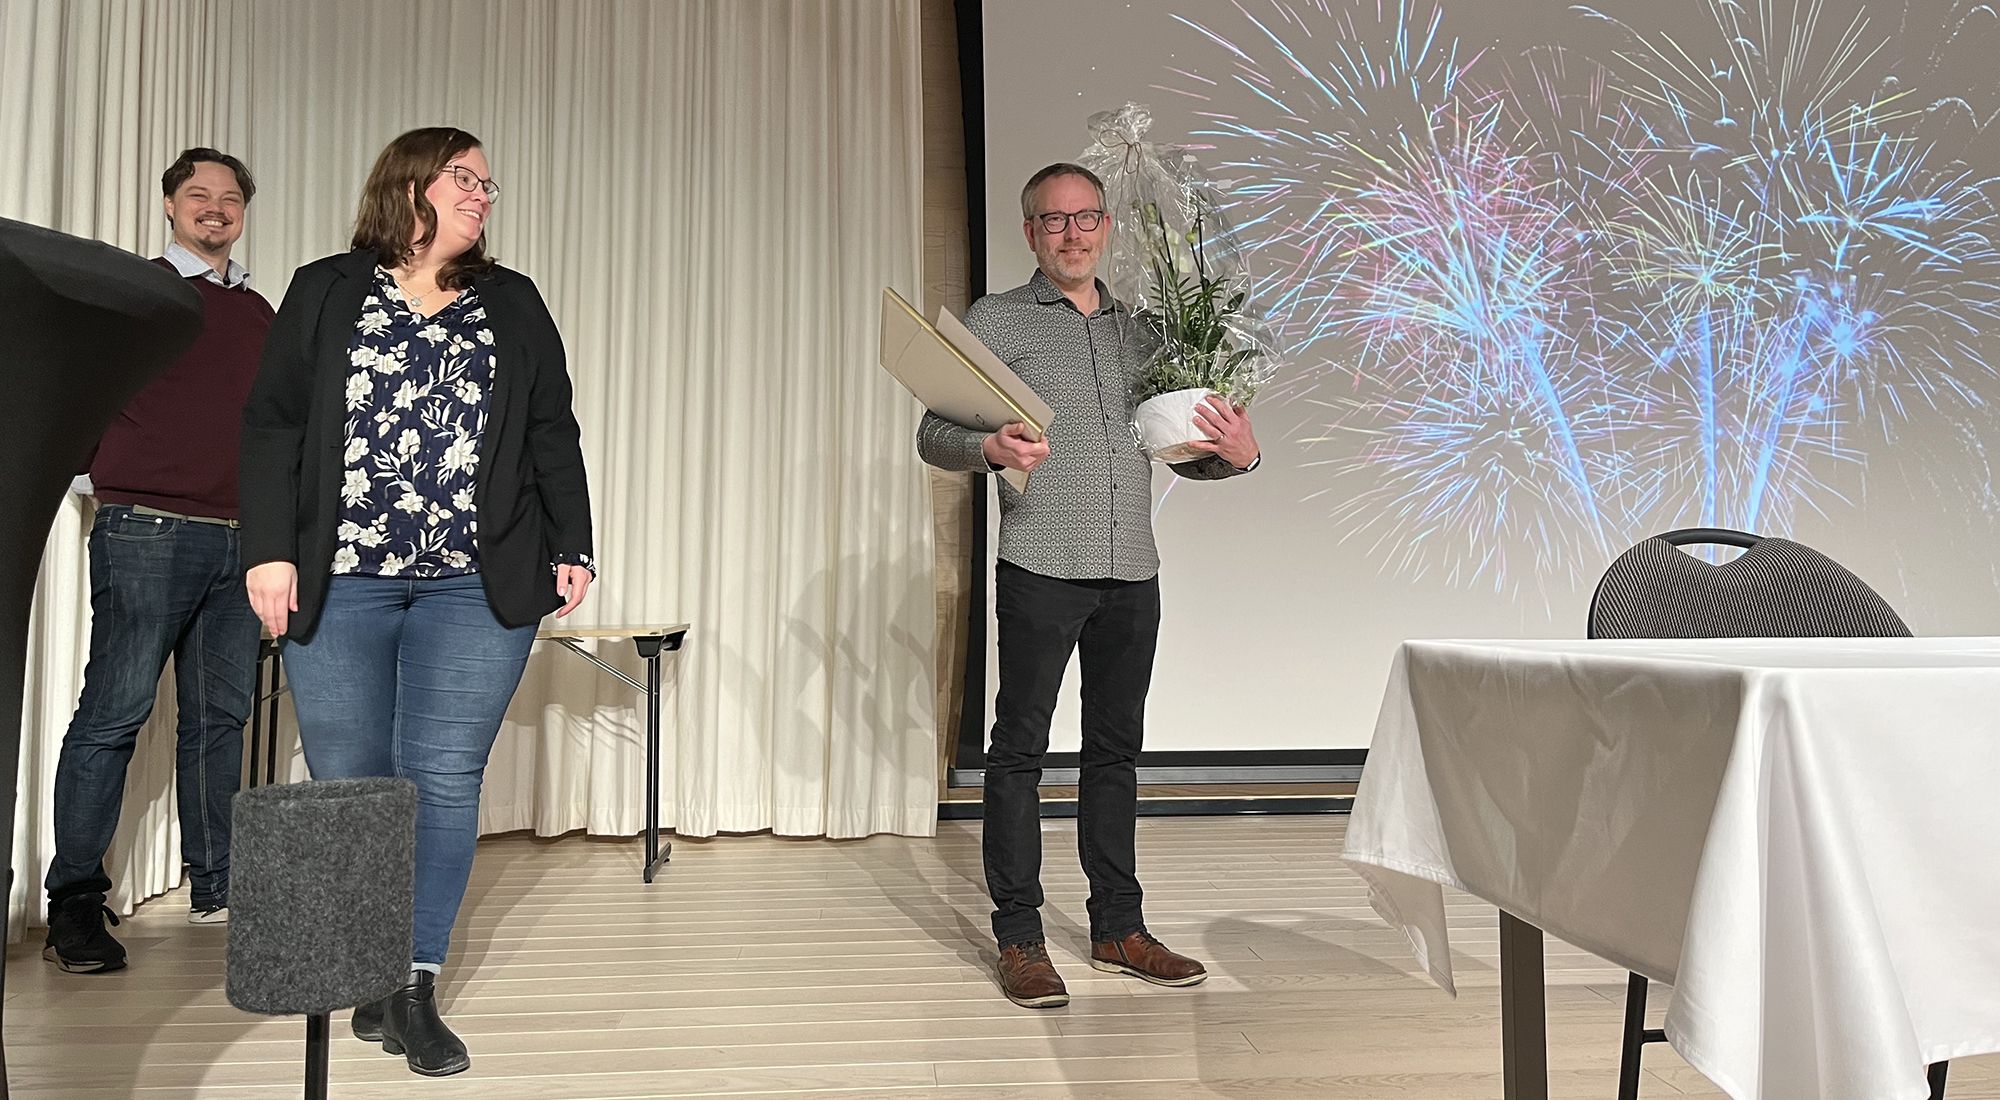 Mats Börjesson står med blomma och diplom framför en bild med fyrverkerier. I vänstra kanten syns politikerna.